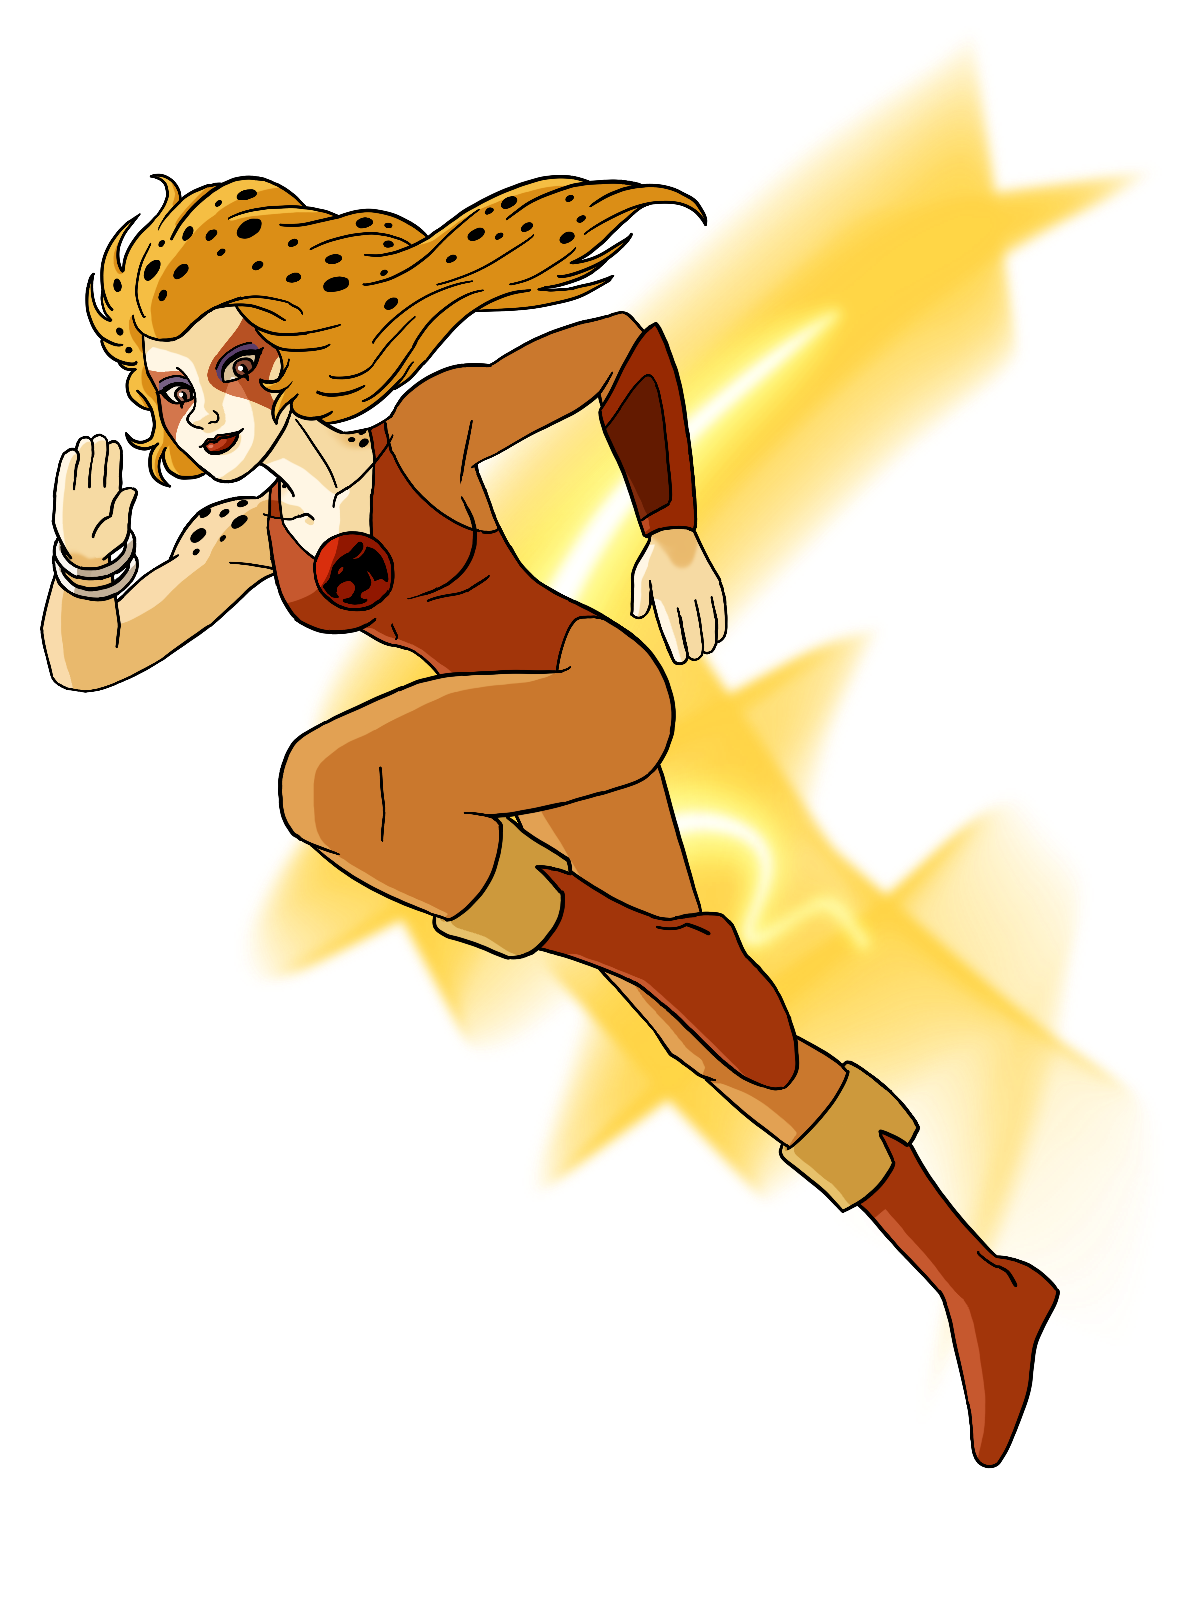 Check out this transparent ThunderCats character Cheetara PNG image